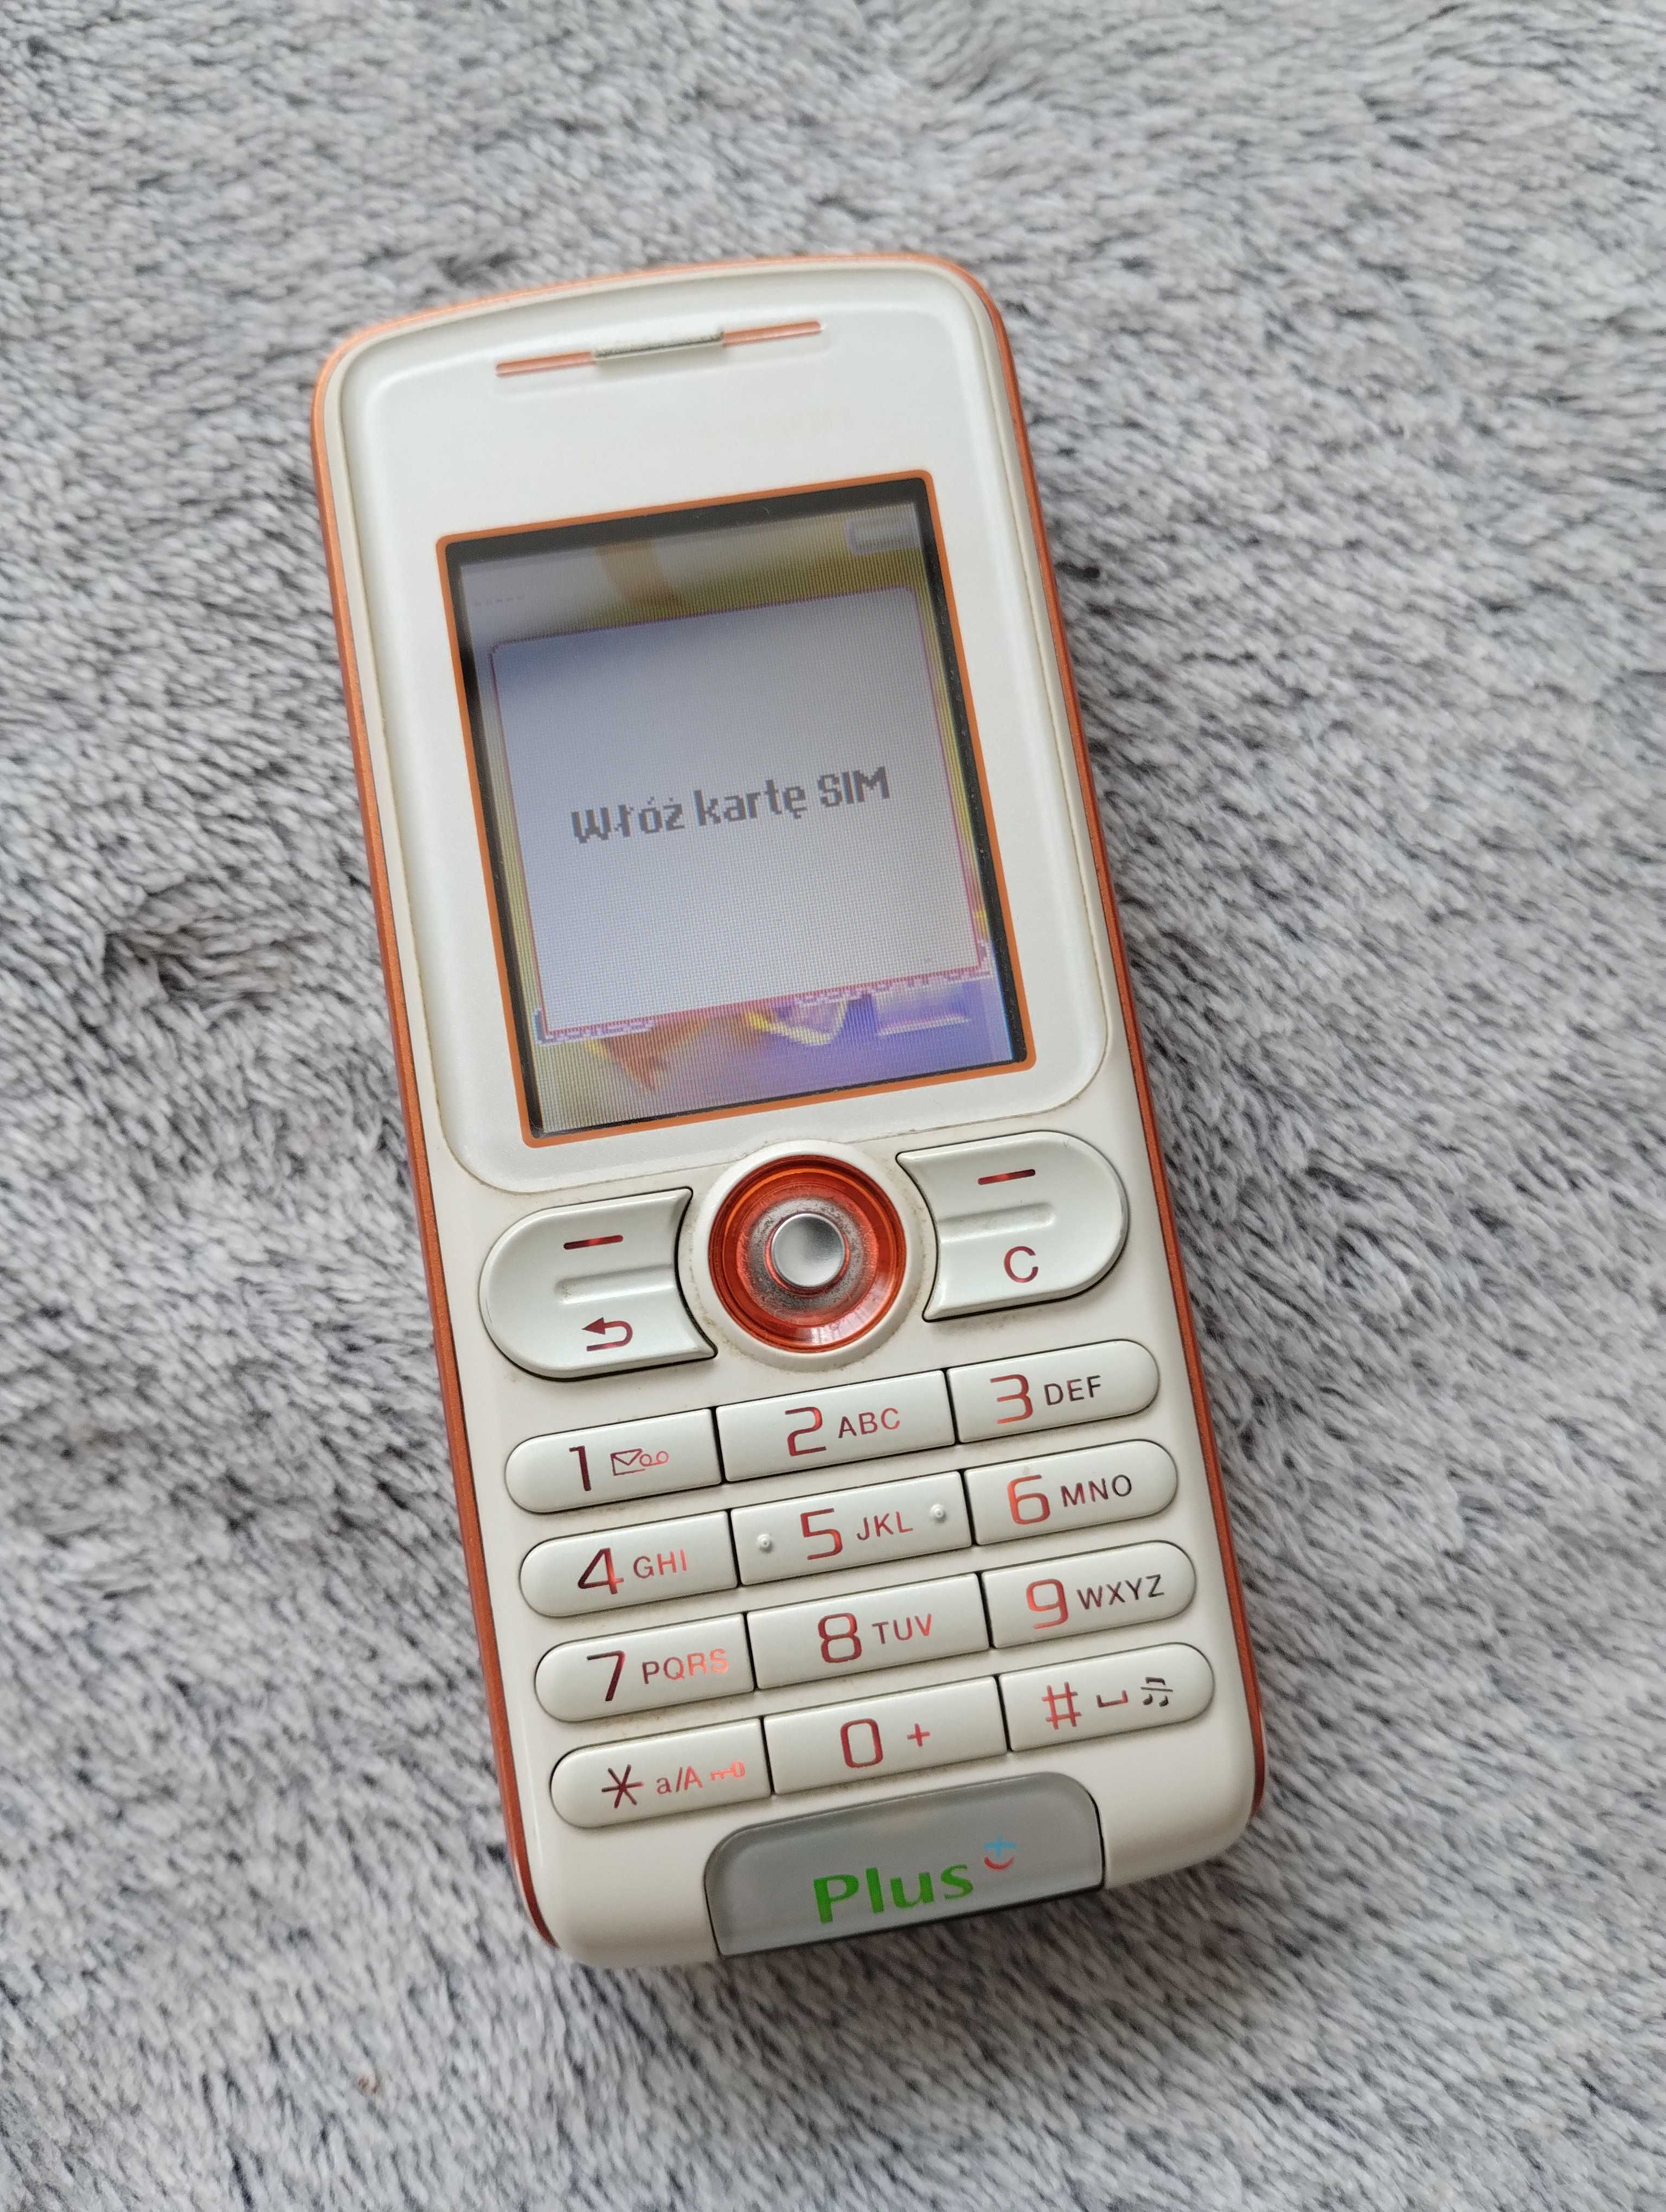 Kultowy telefon Sony Eriksson W200i walkman